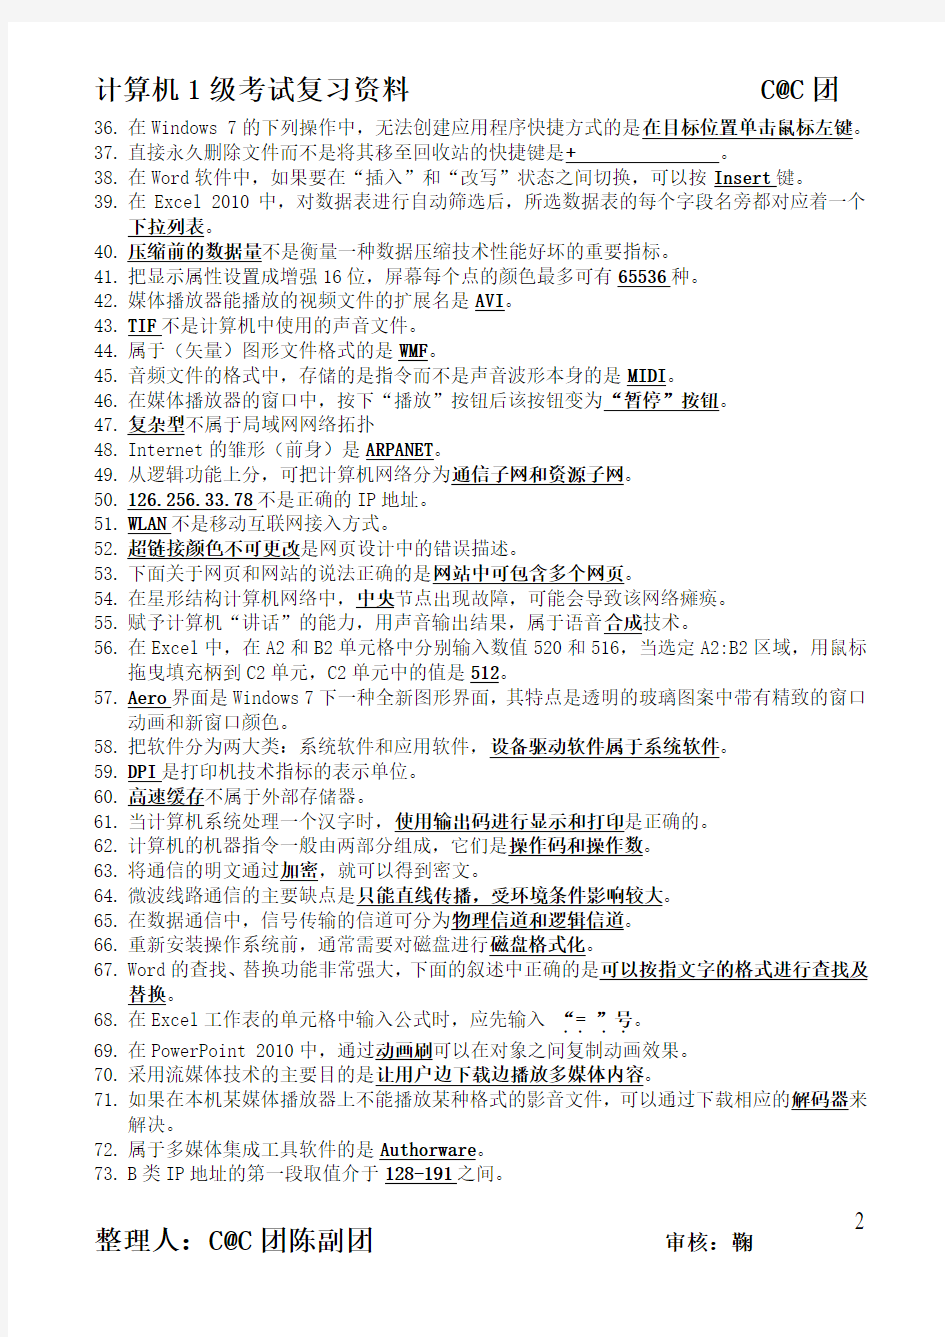 2014上海计算机1级考试资料整理